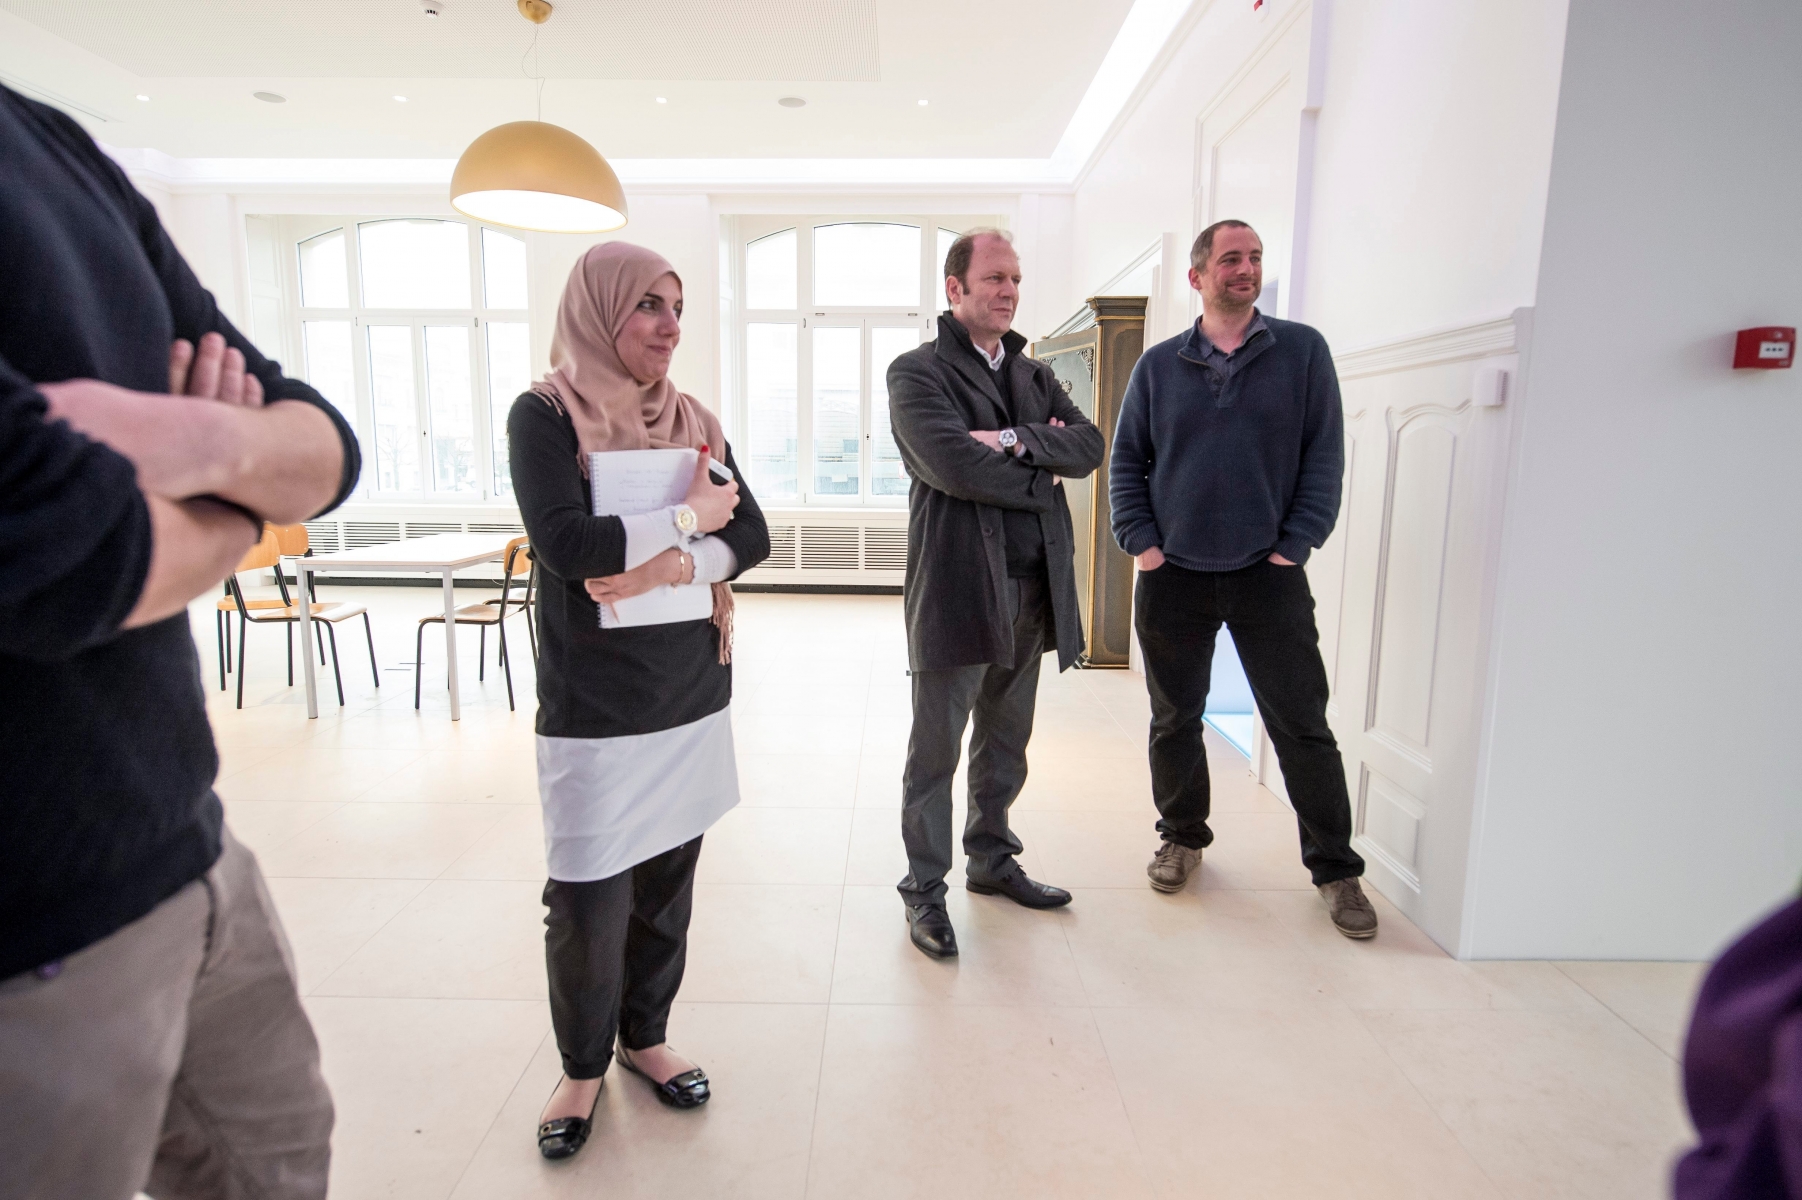 Le centre culturel Islamique de La Chaux-de-Fonds va bientot ouvrir son Musee des Civilisations de l'Islam (MUCIVI). Un projet immobilier est egalement en cours. 



La Chaux-de-Fonds, le 05.04.2016



Photo : Lucas Vuitel